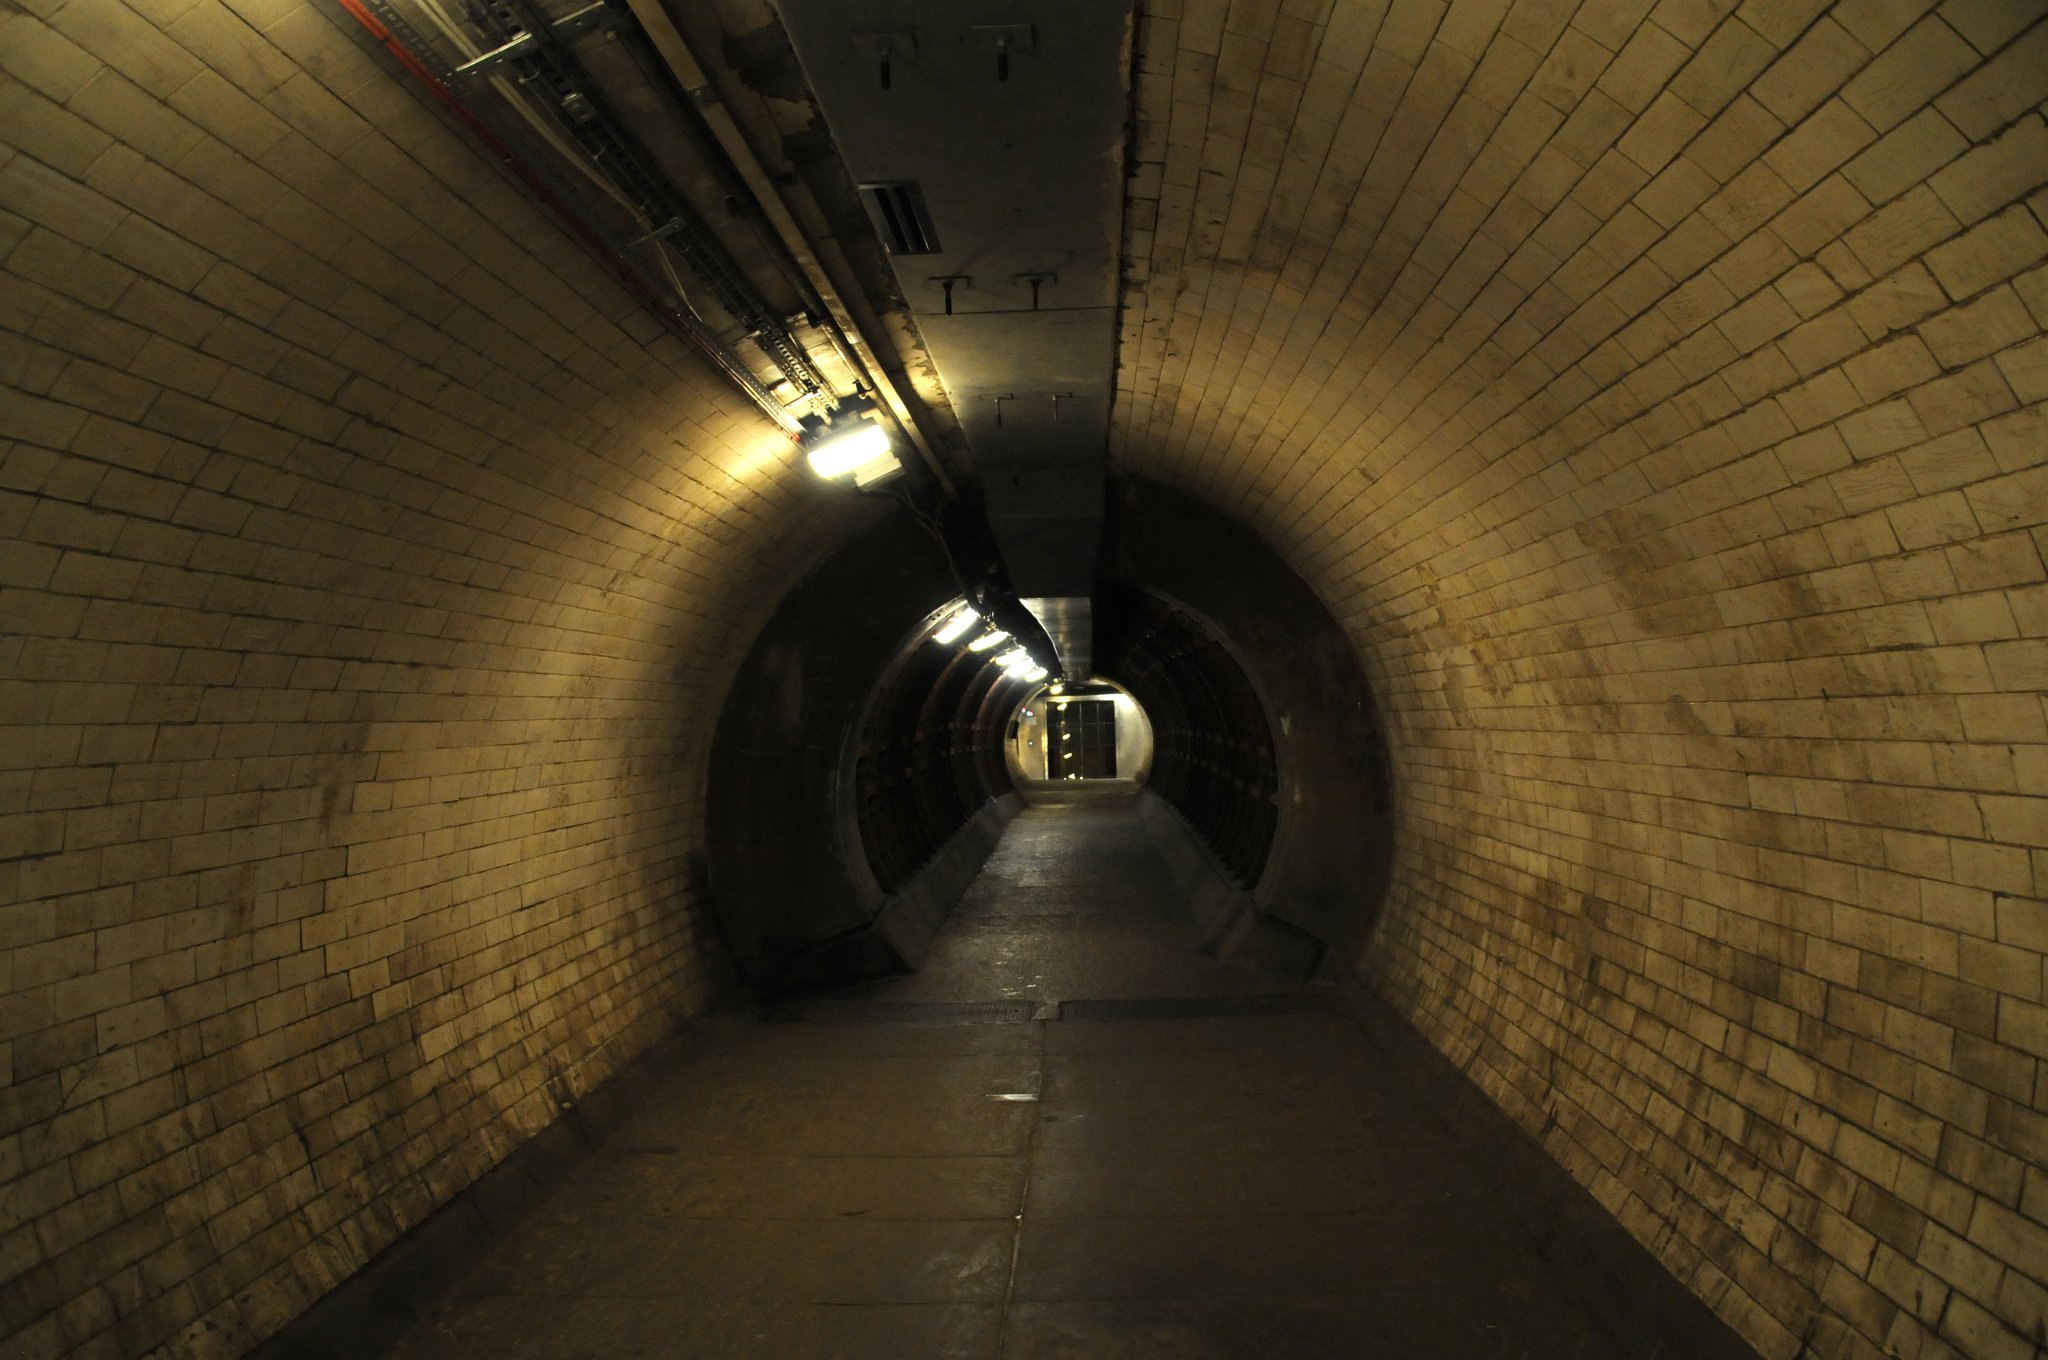 DSC_4332_1.jpg - V části tunelu je patrné zúžení. Tato část byla poškozena během náletu za druhé světové války a musela být následně vyztužena.